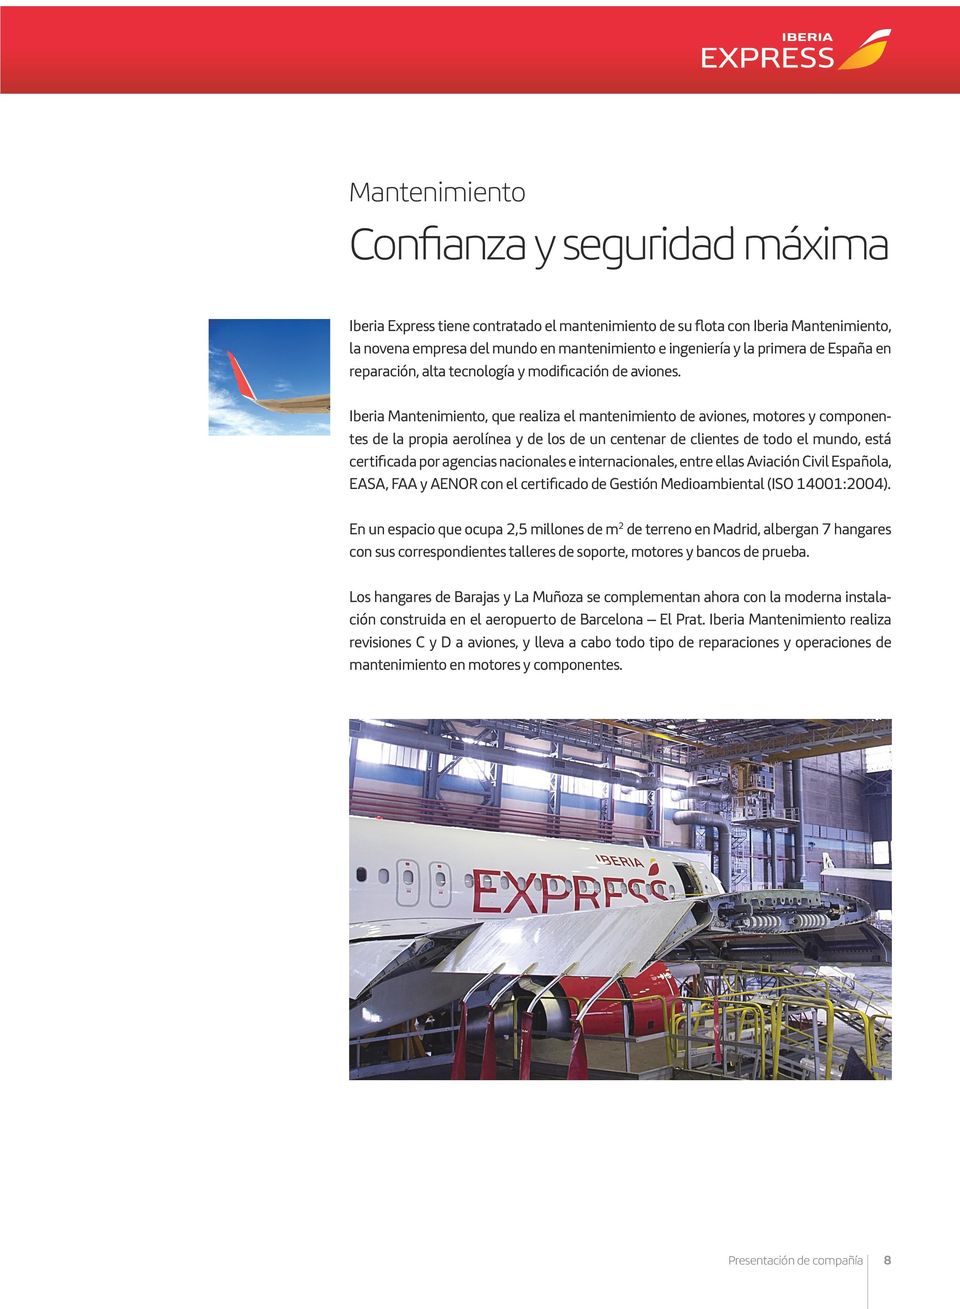 Iberia Mantenimiento, que realiza el mantenimiento de aviones, motores y componentes de la propia aerolínea y de los de un centenar de clientes de todo el mundo, está certificada por agencias